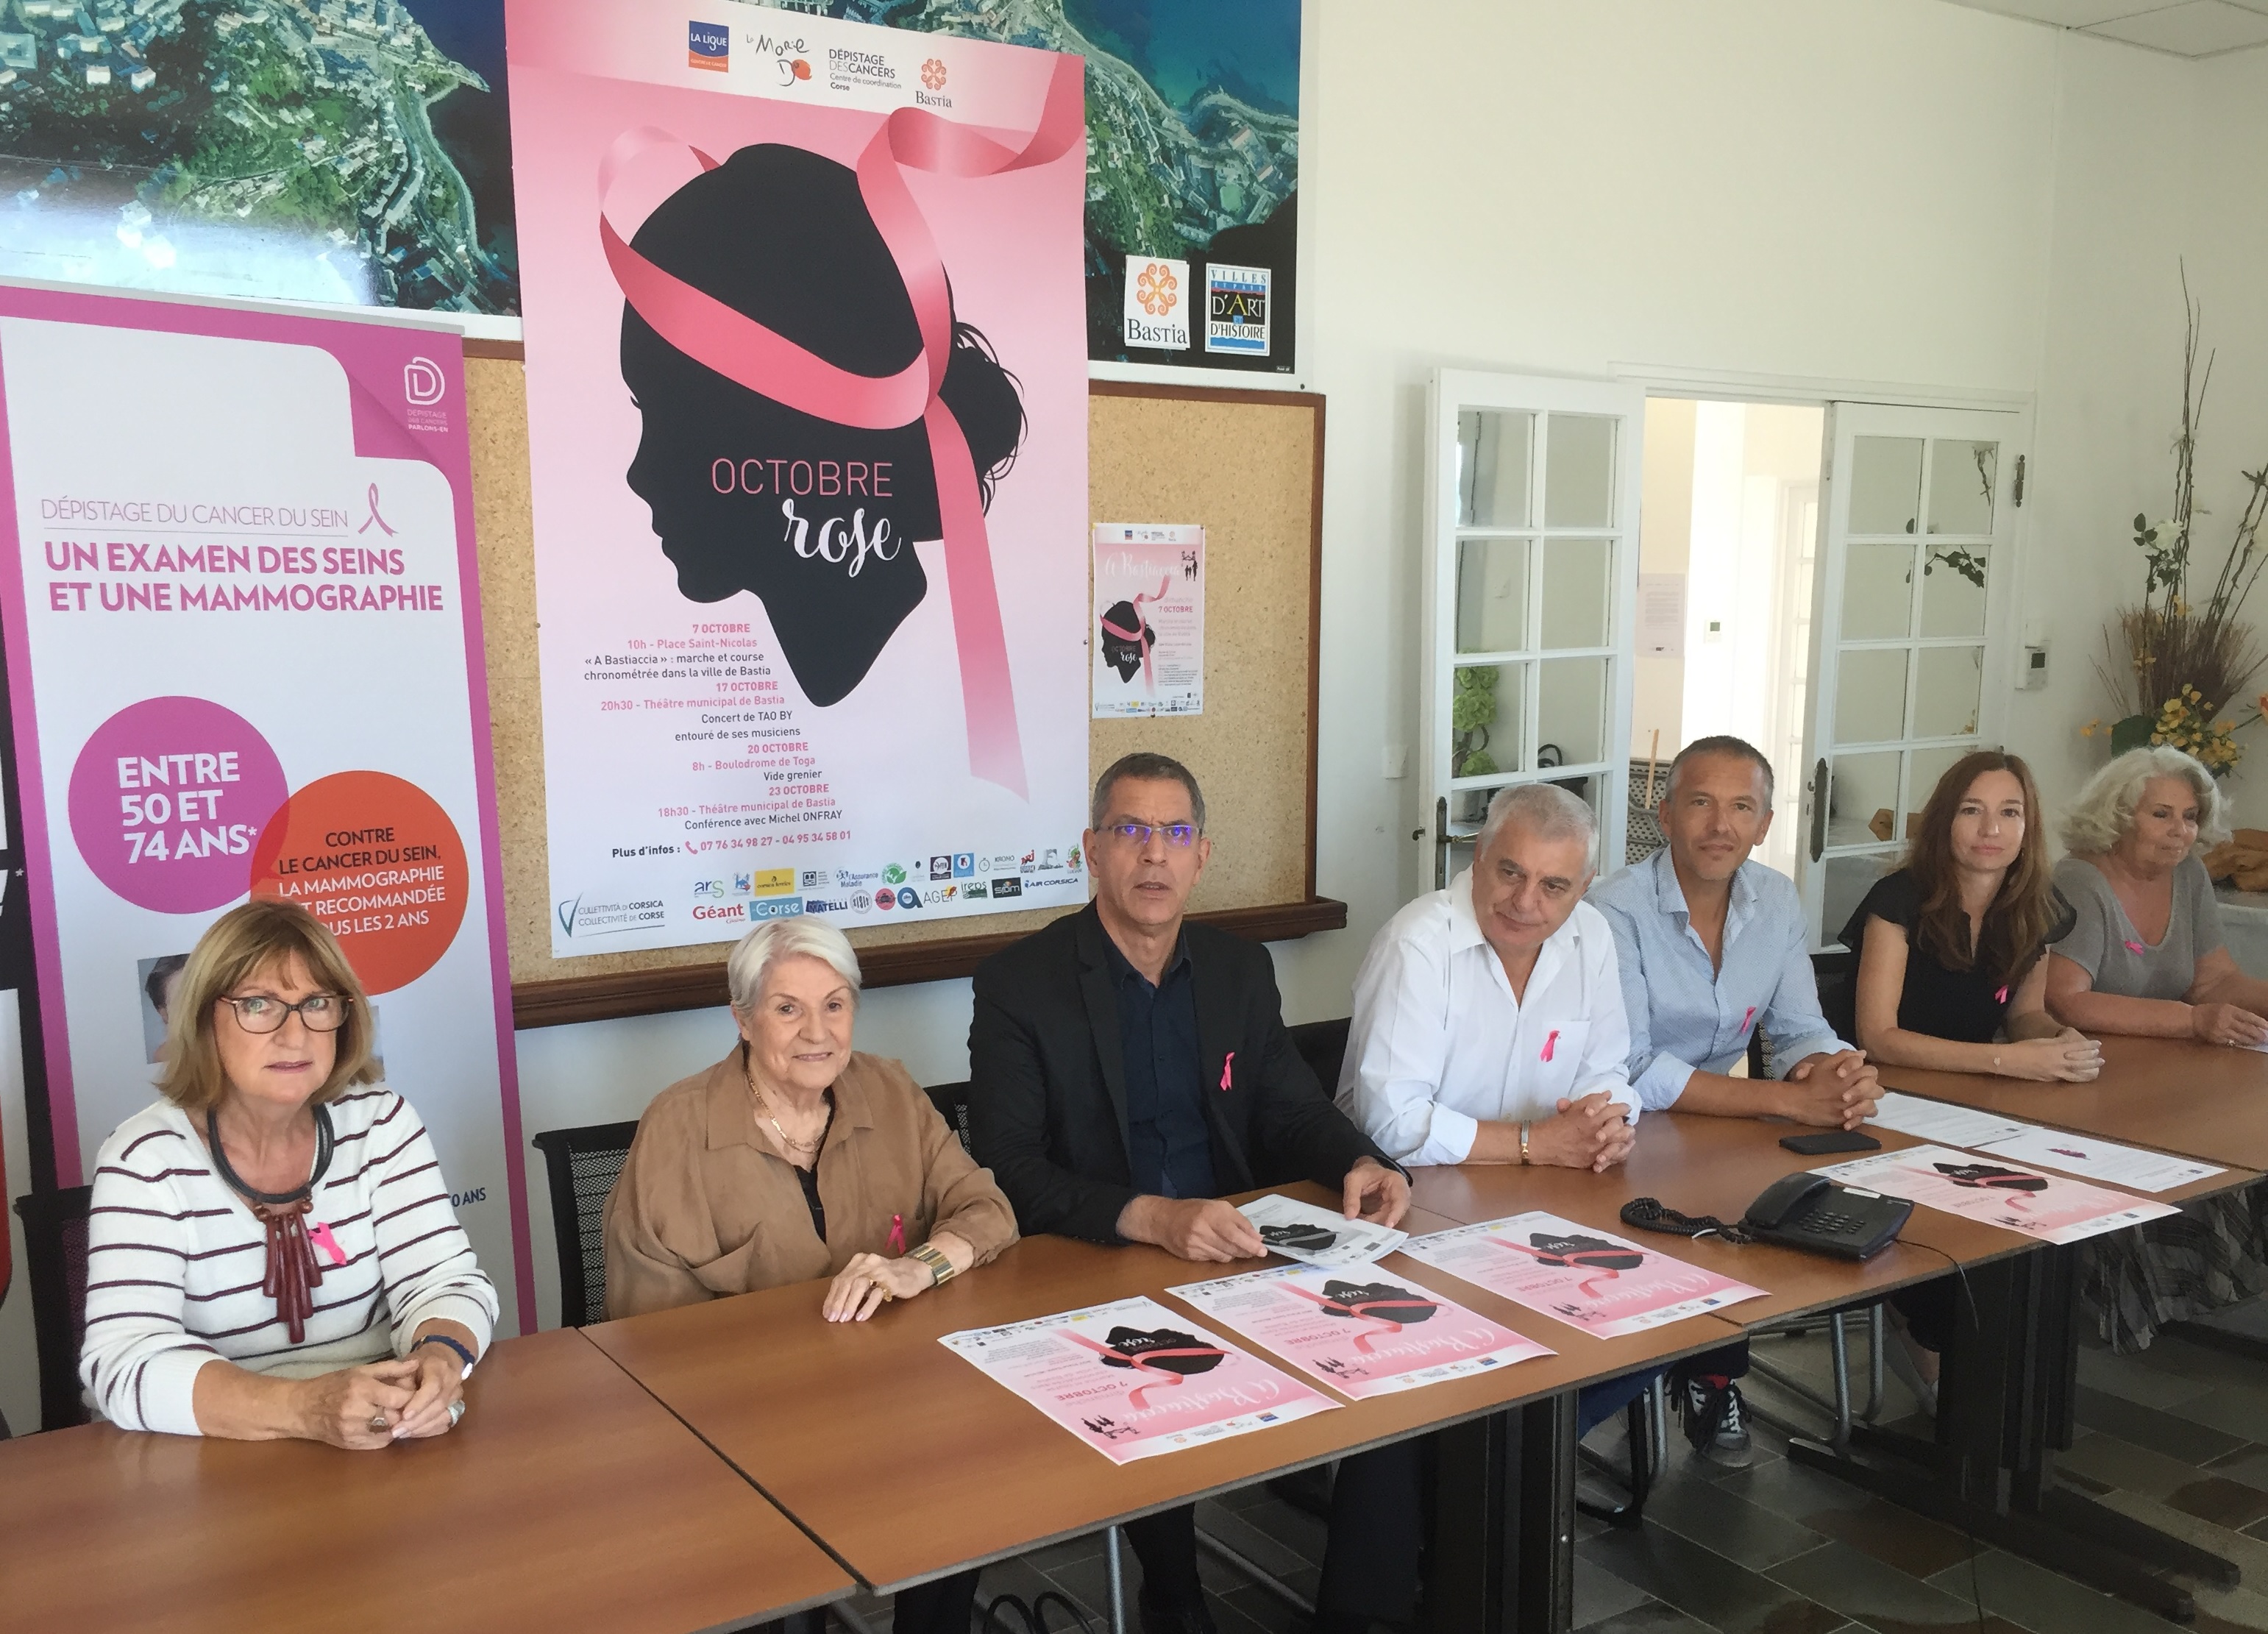 Regroupés par la mairie de Bastia, les différents partenaires d'Octobre rose ont présenté les animations